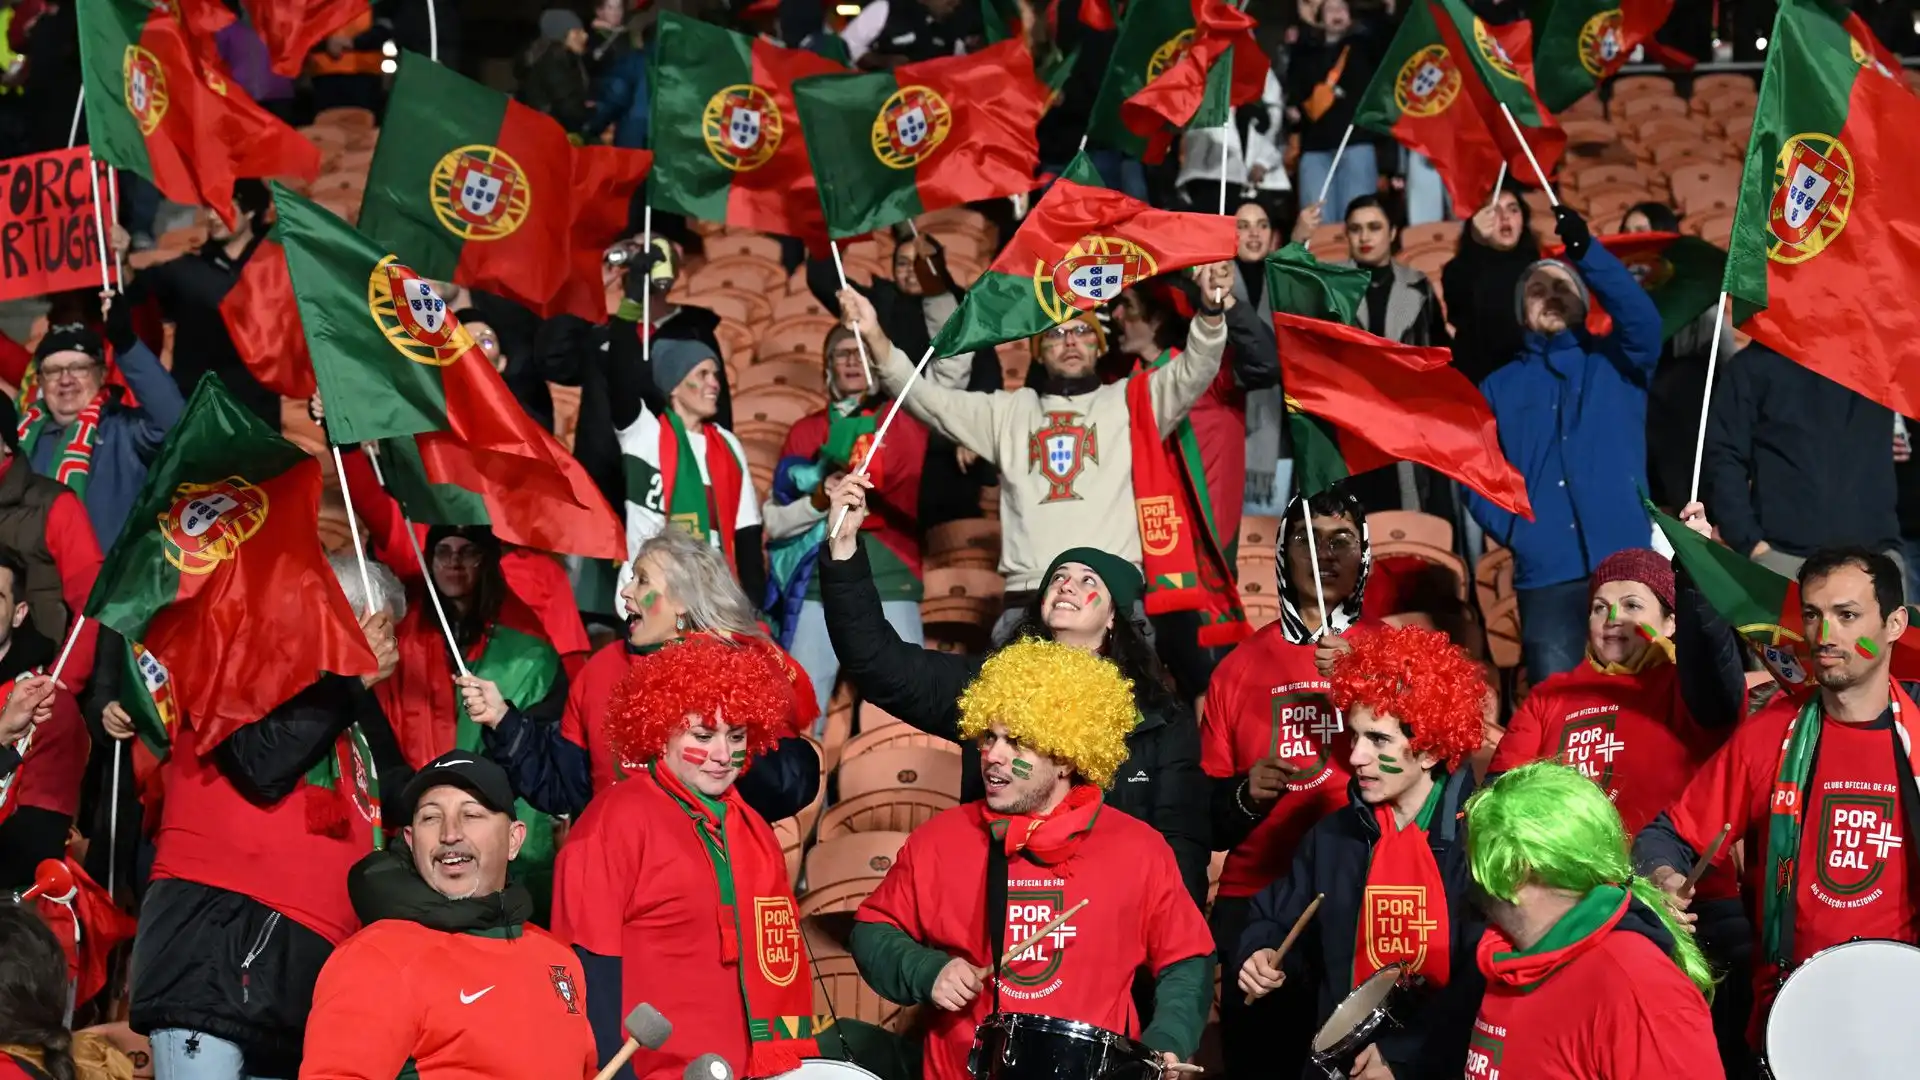 Festa grande per i tifosi del Portogallo